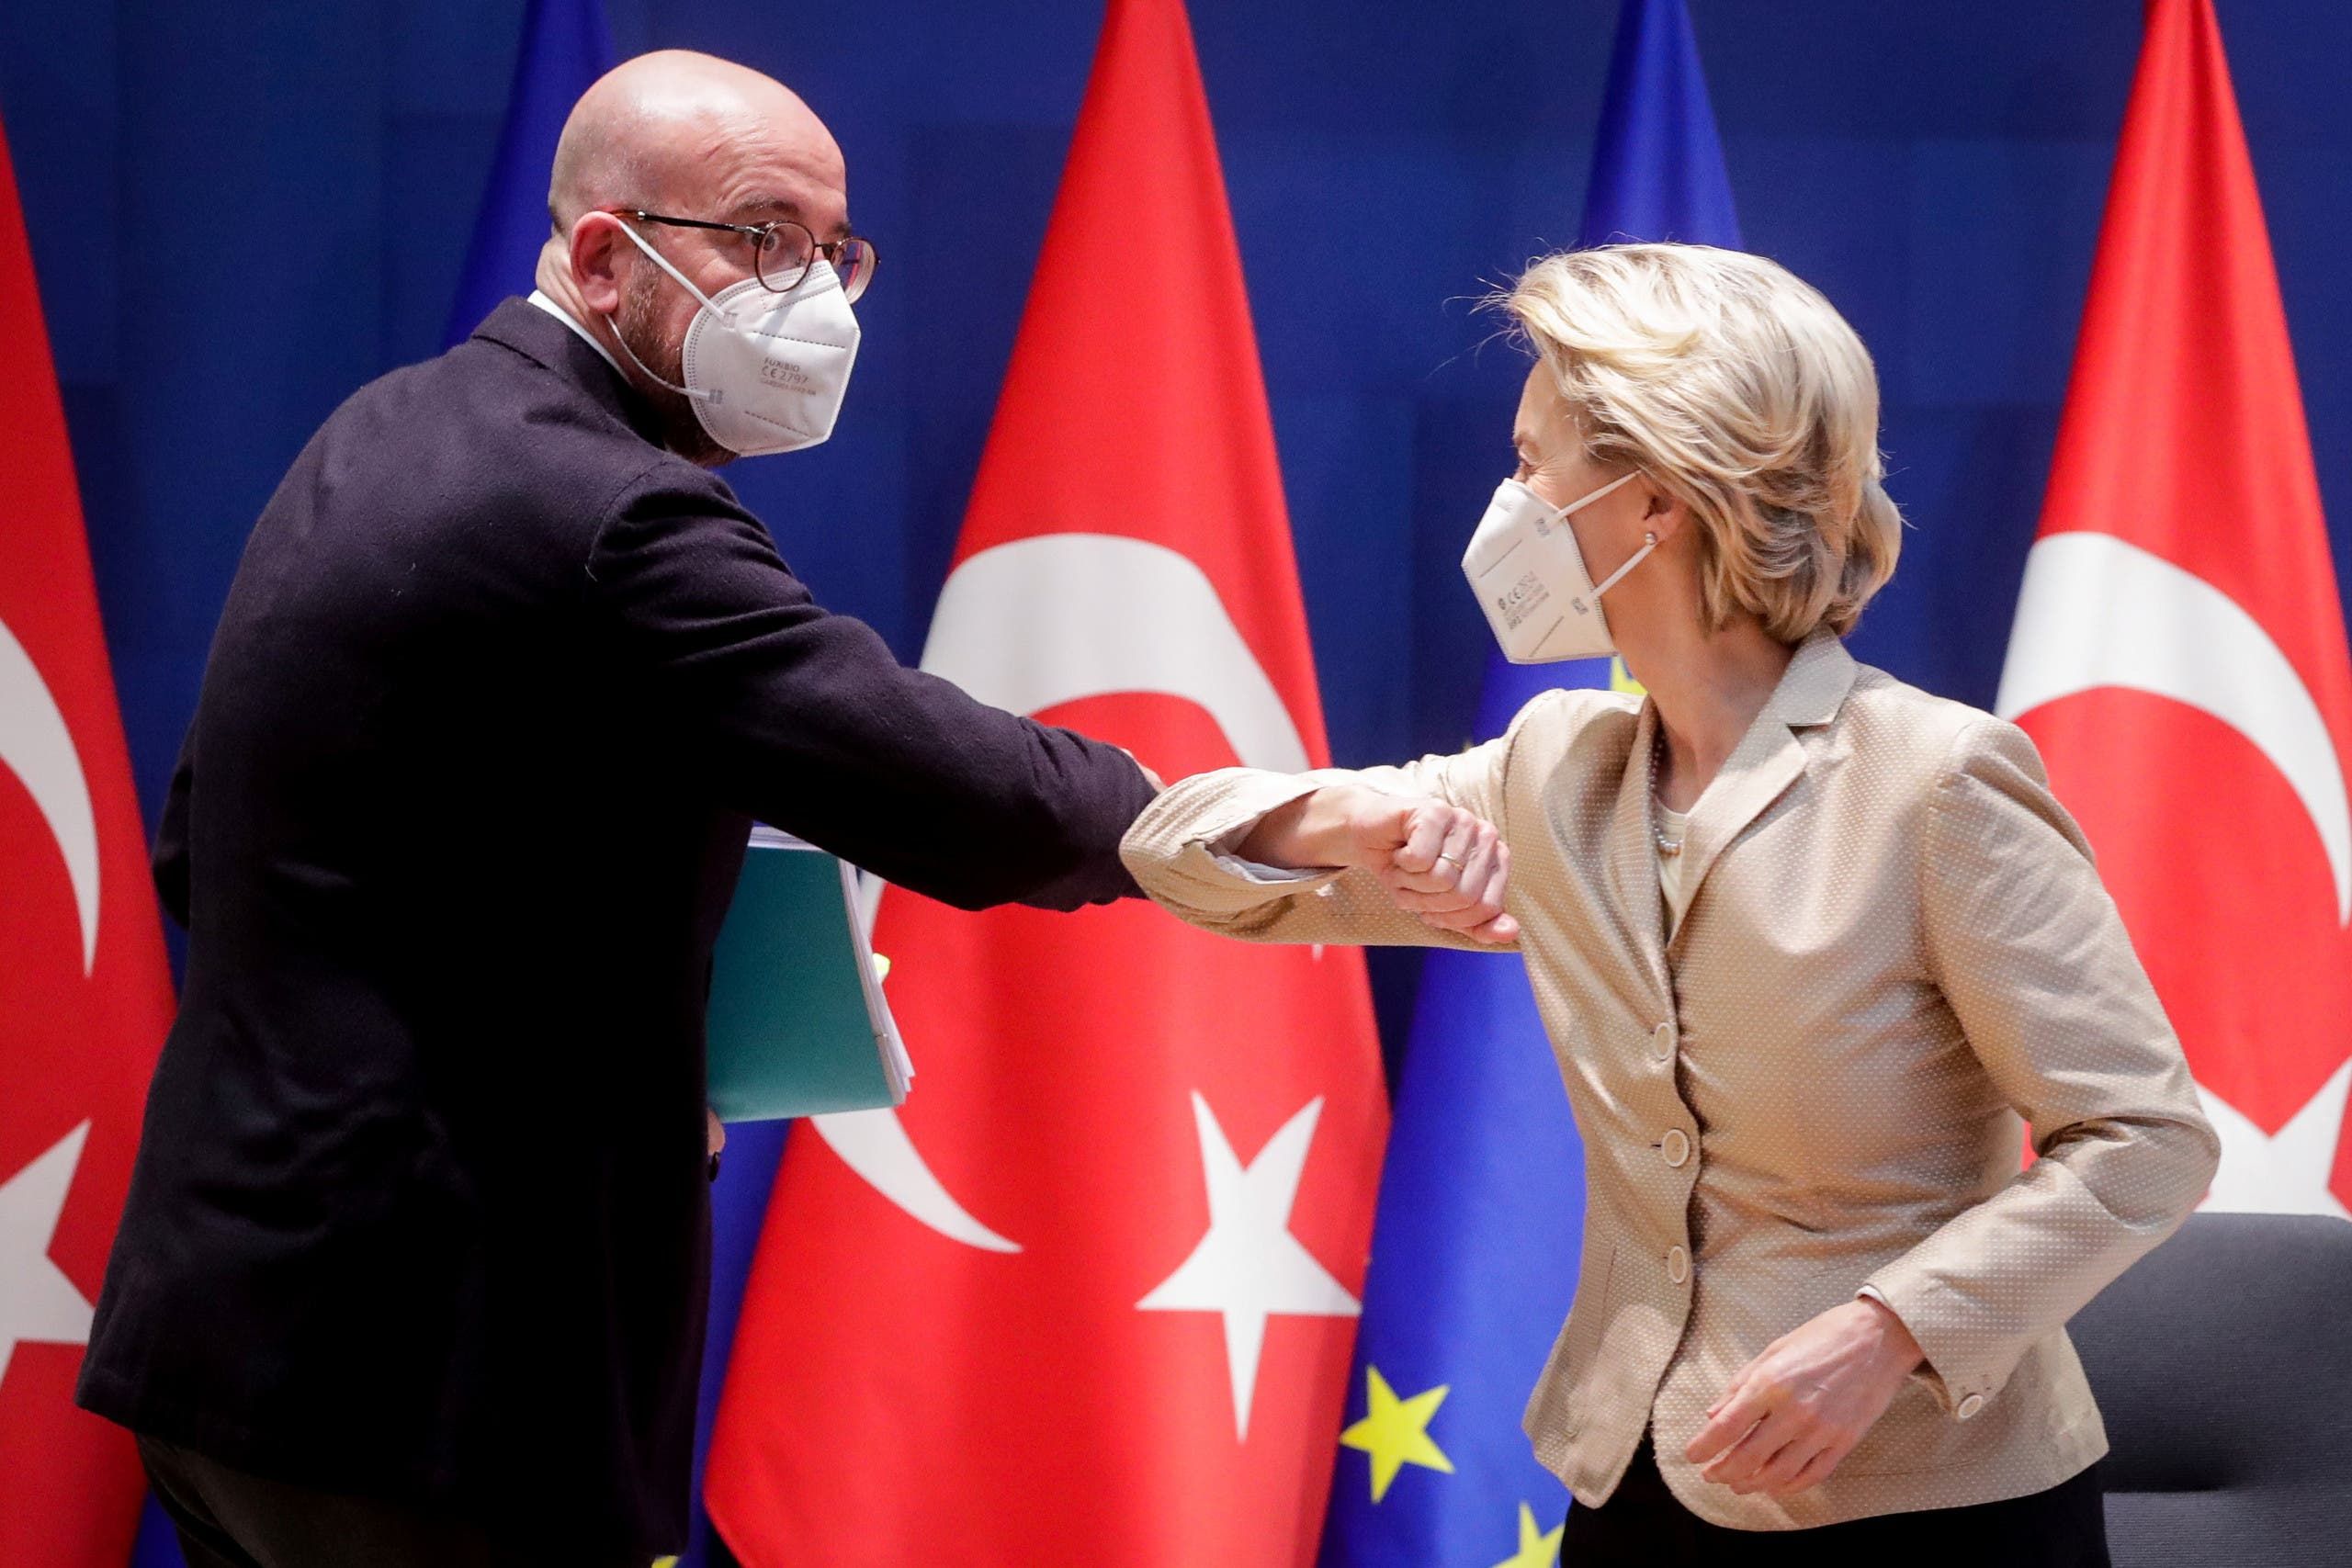 فون دير ليين وميشال خلال لقاءهما في بروكسل بمارس الماضي قبل لقاء افتراضي مع الرئيس التركي